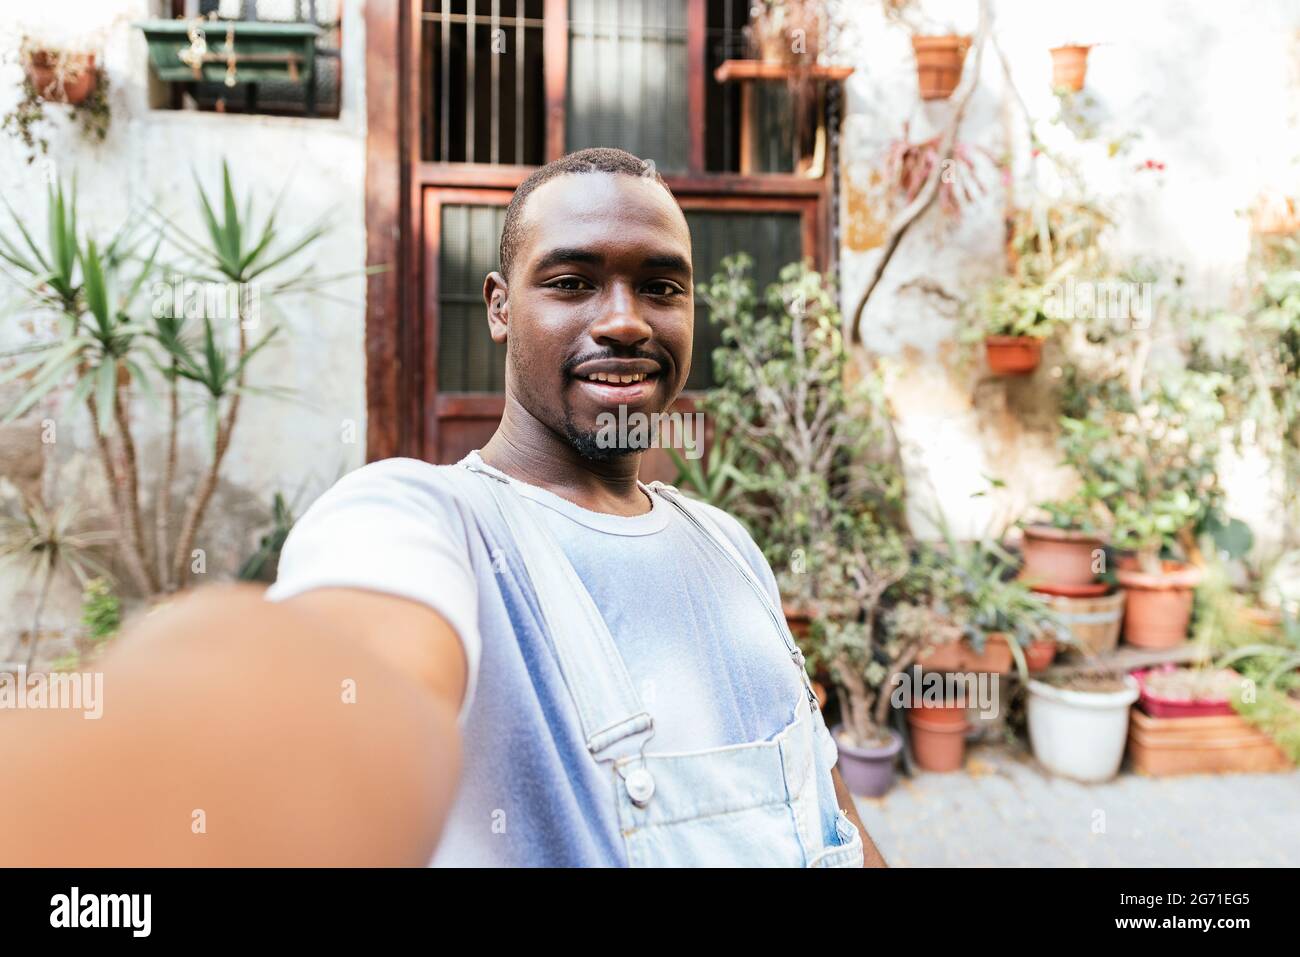 afrikanischer attraktiver Mann, der seinen Arm mit seinem Telefon hob, um ein Selfie zu machen. Er lächelt zur Kamera. Stockfoto